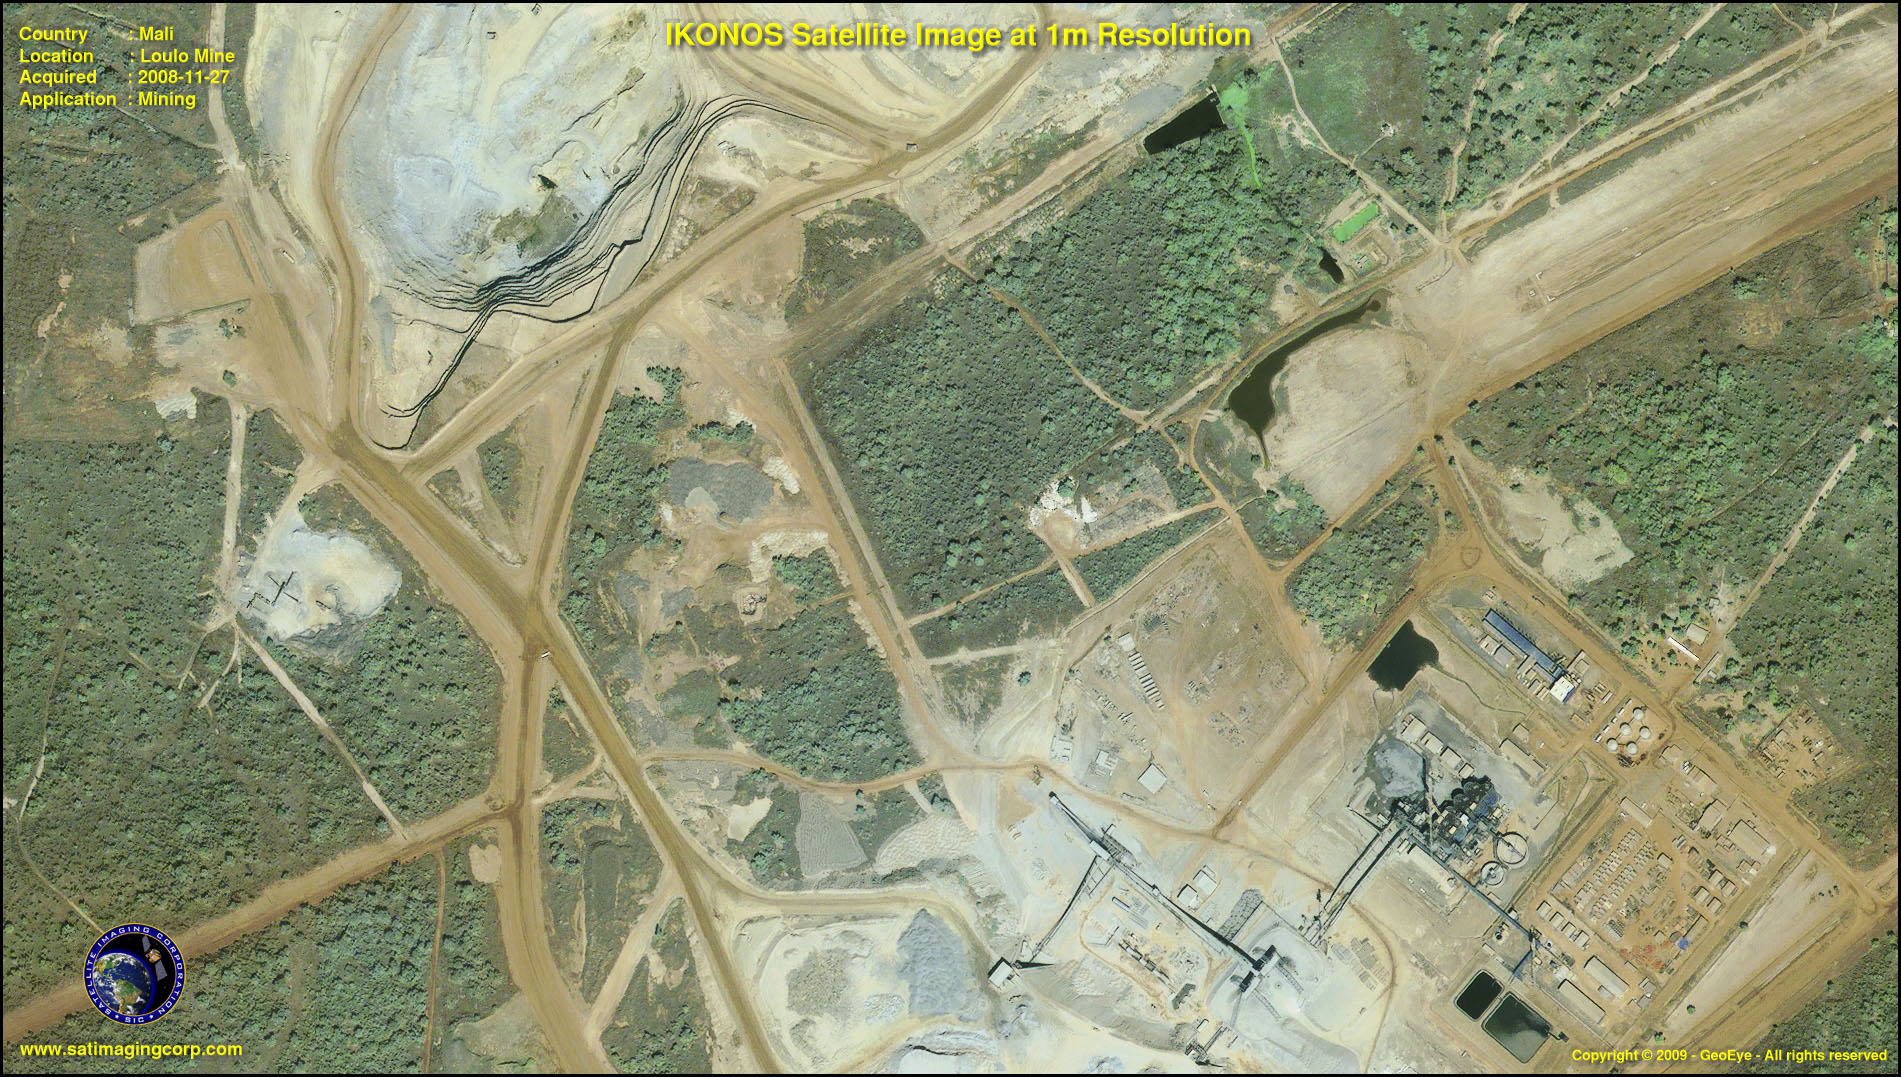 IKONOS Satellite Images of Mali, Africa | Satellite Imaging Corp